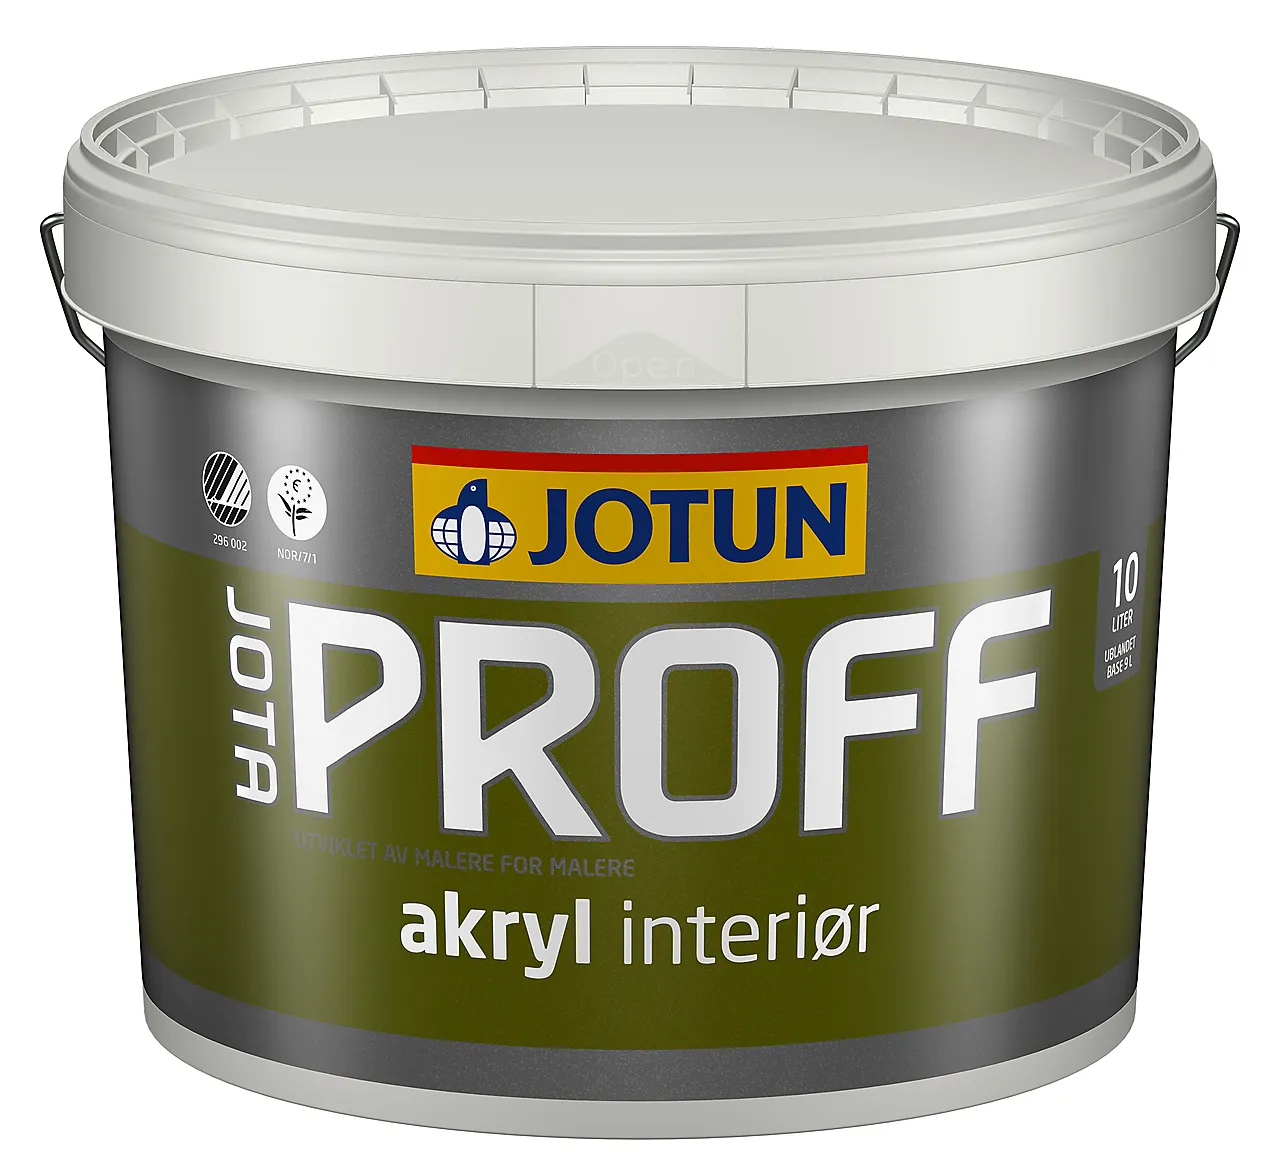 Jotaproff akryl 25 c-base  9 ljotun